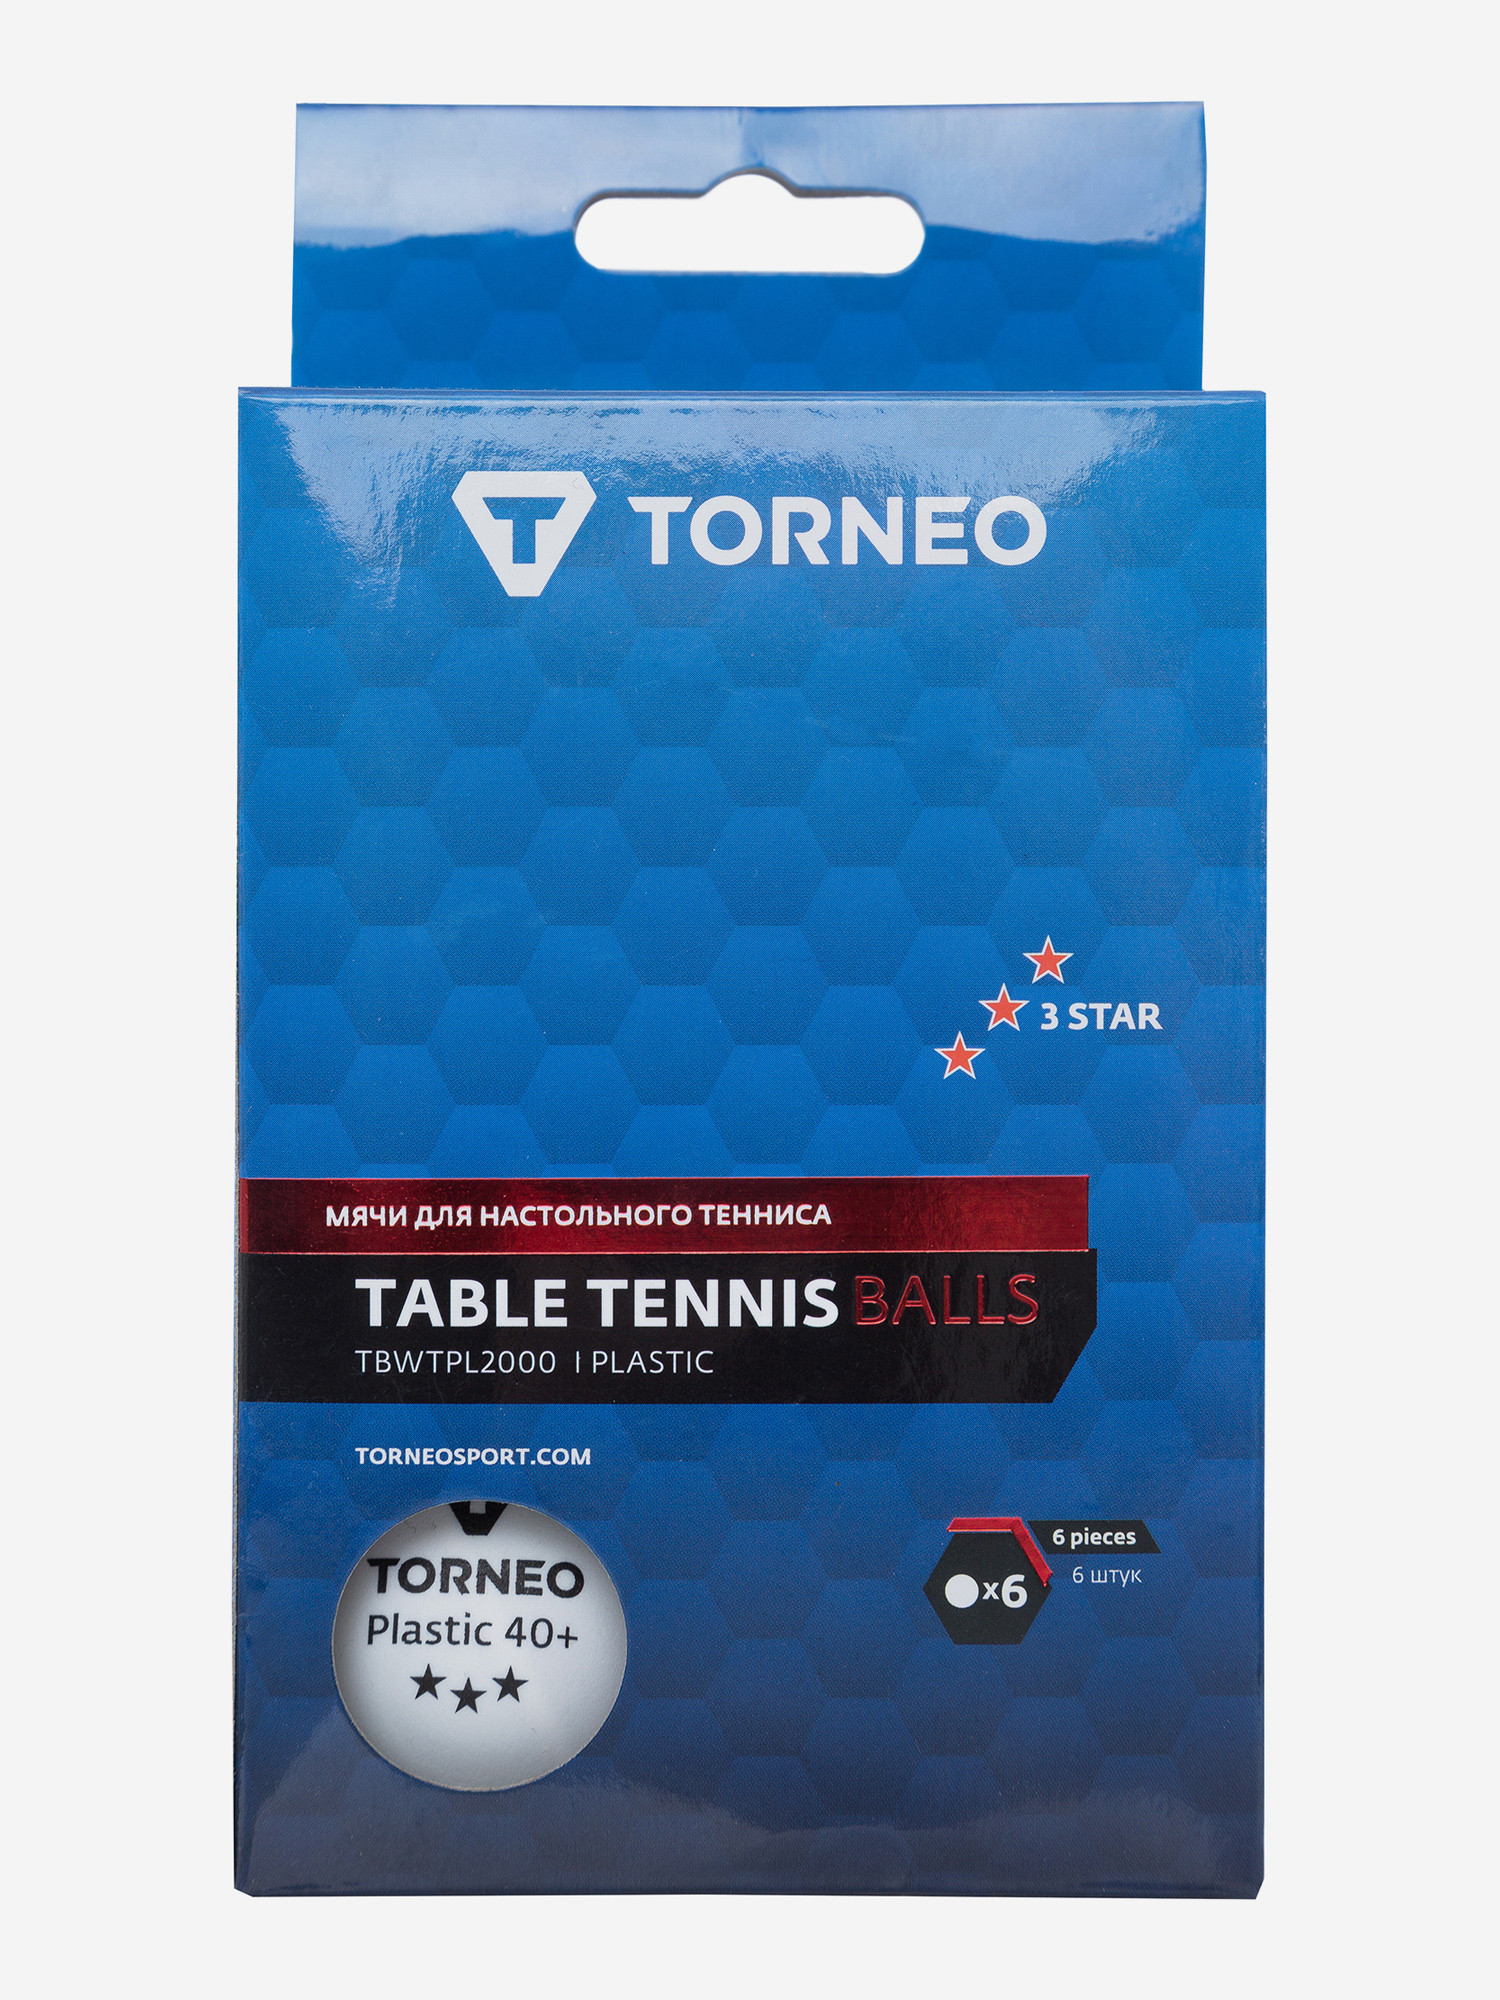 Набор мячей для настольного тенниса Torneo, 3-Star, 6 шт.